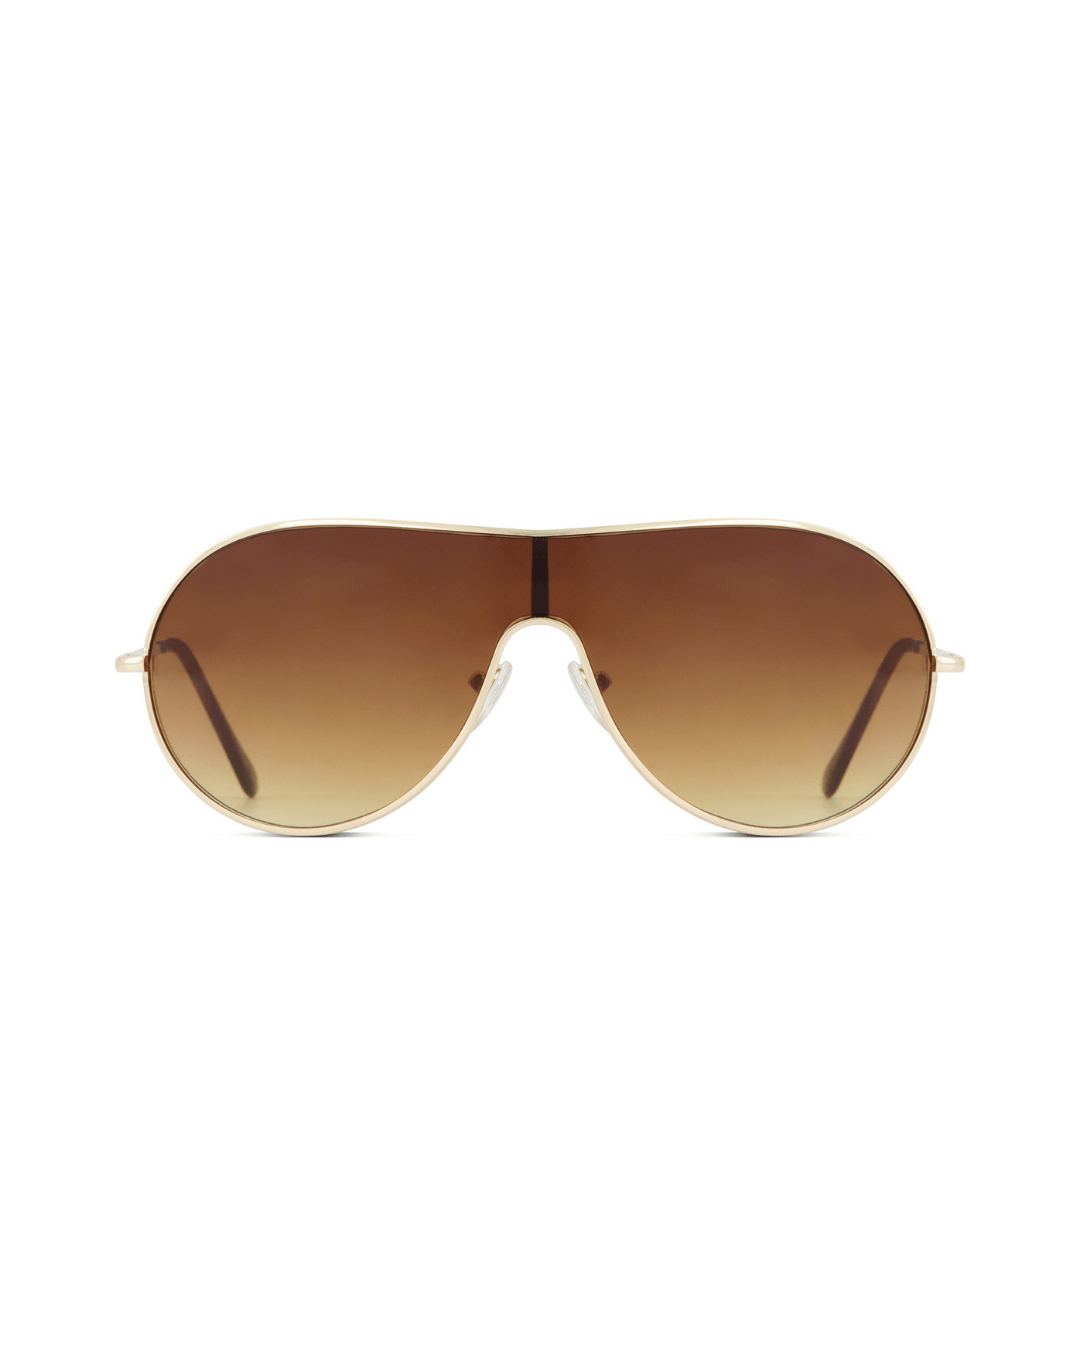 Gold Rim Aviator Sunglasses - American Deadstock